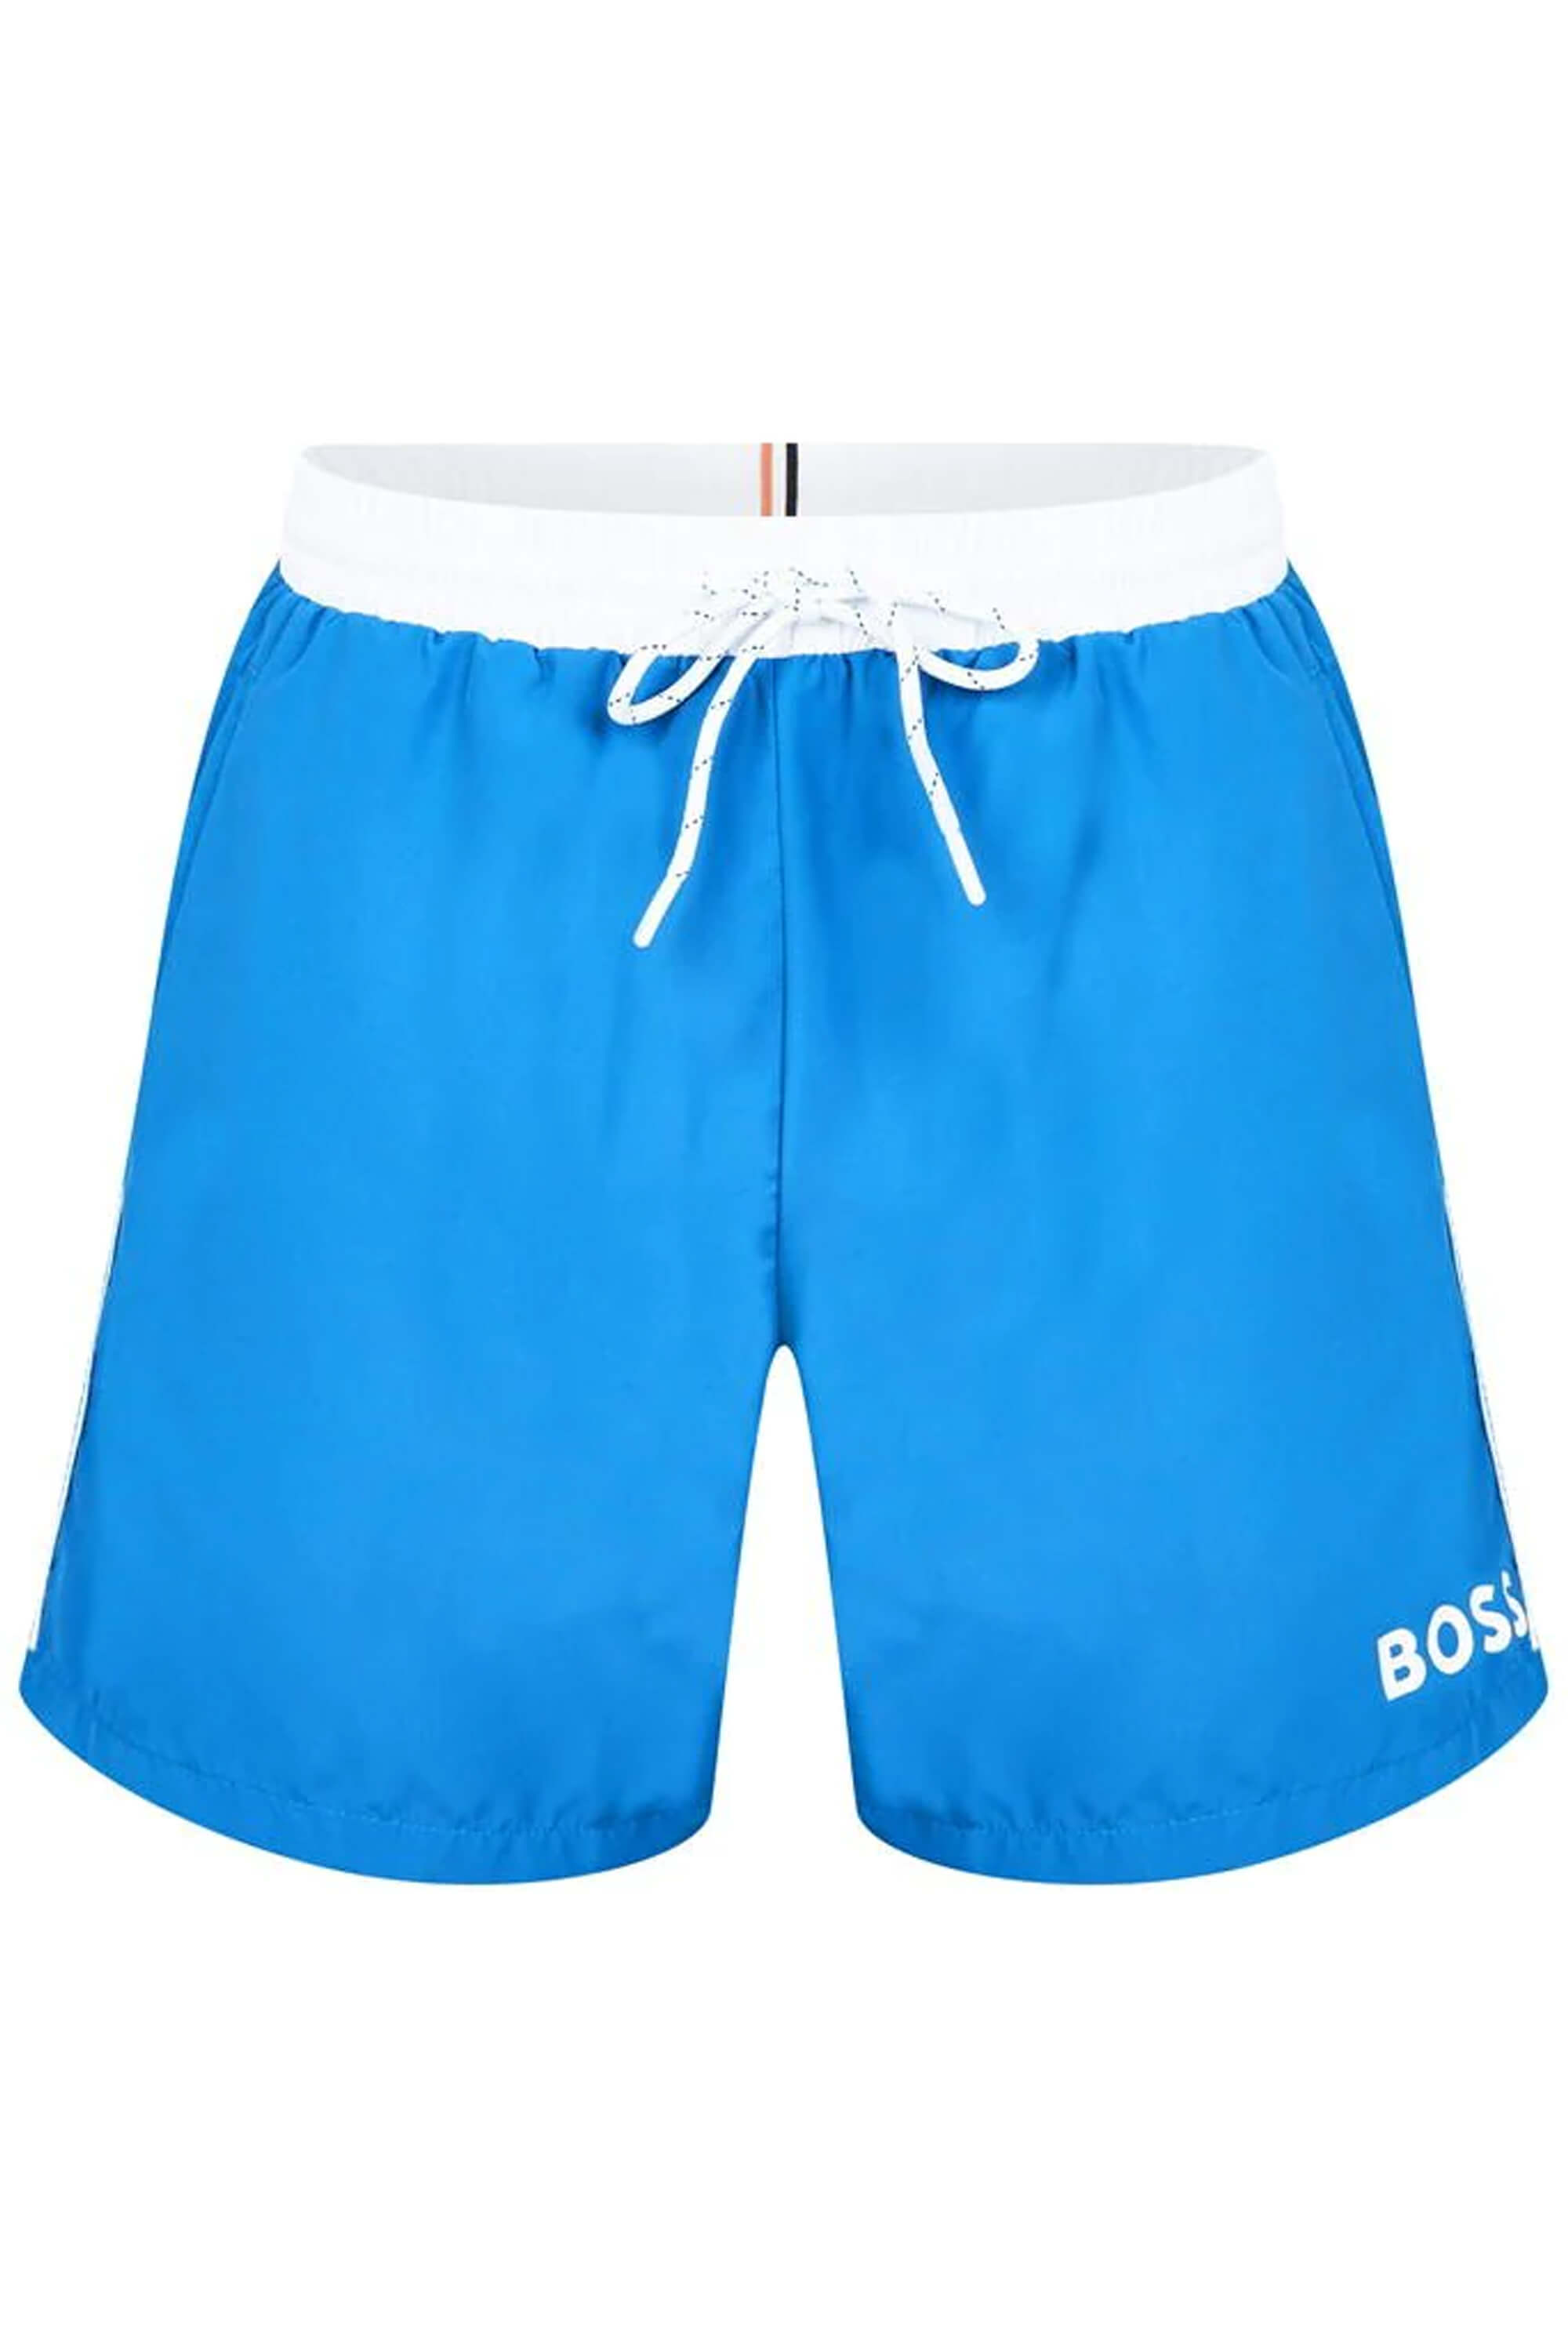 Hugo Boss Starfish Swim Shorts Open Blue